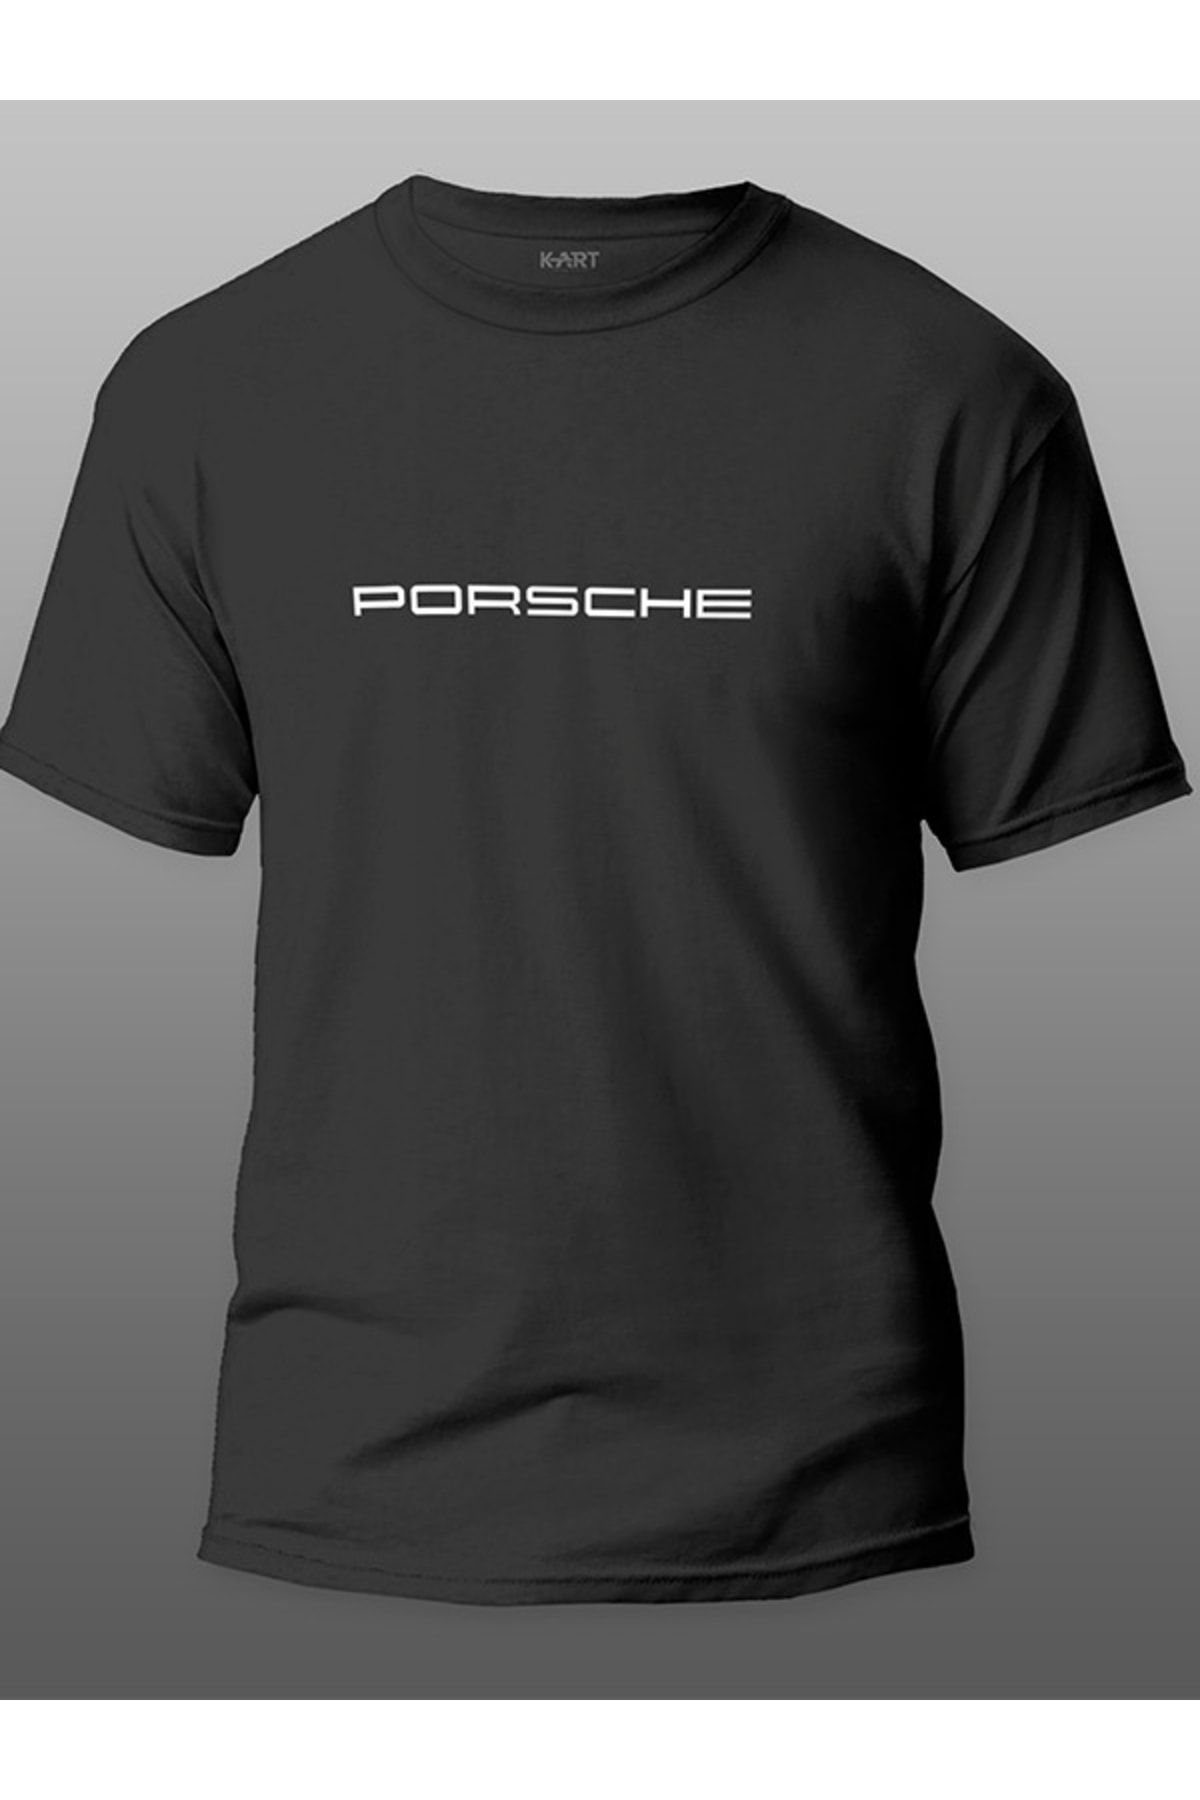 Tişört Baskı Baskılı Tişört , Porsche Araba Marka Tasarımlı Organik Unisex Siyah Kişiye Özel Baskılı Tişört